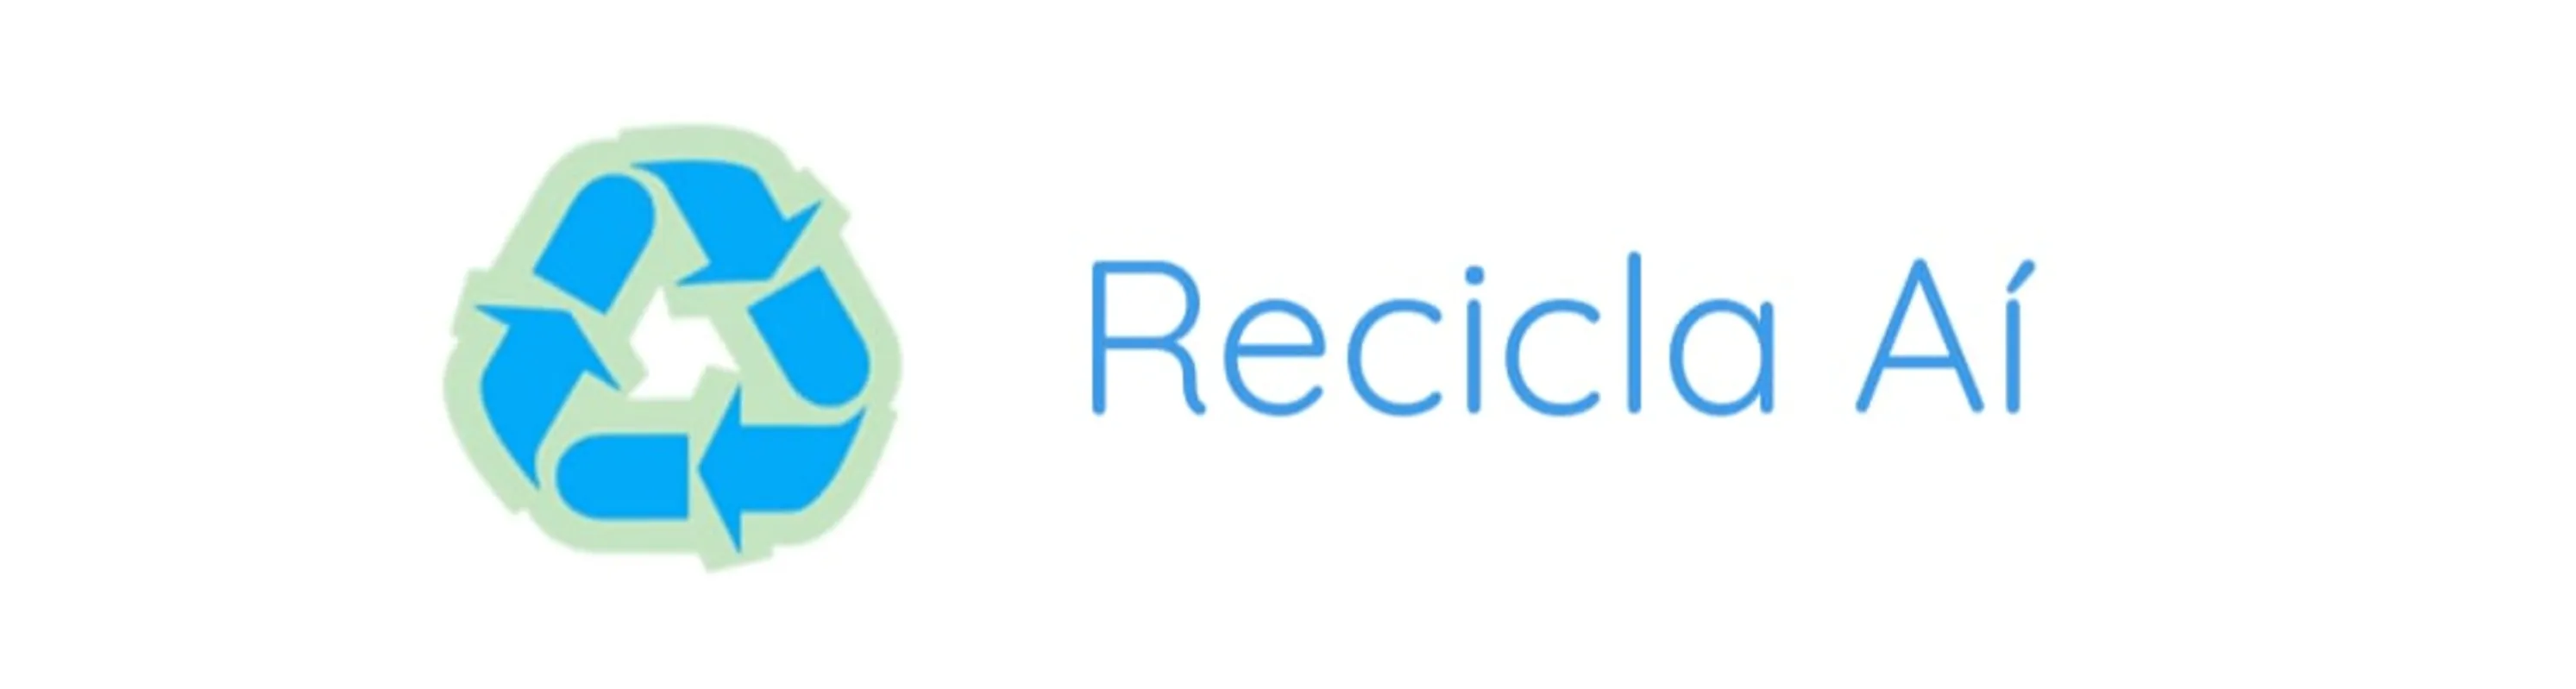 O aplicativo Recicla Aí está disponível para ser baixado tanto para celulares Android, quanto IOS